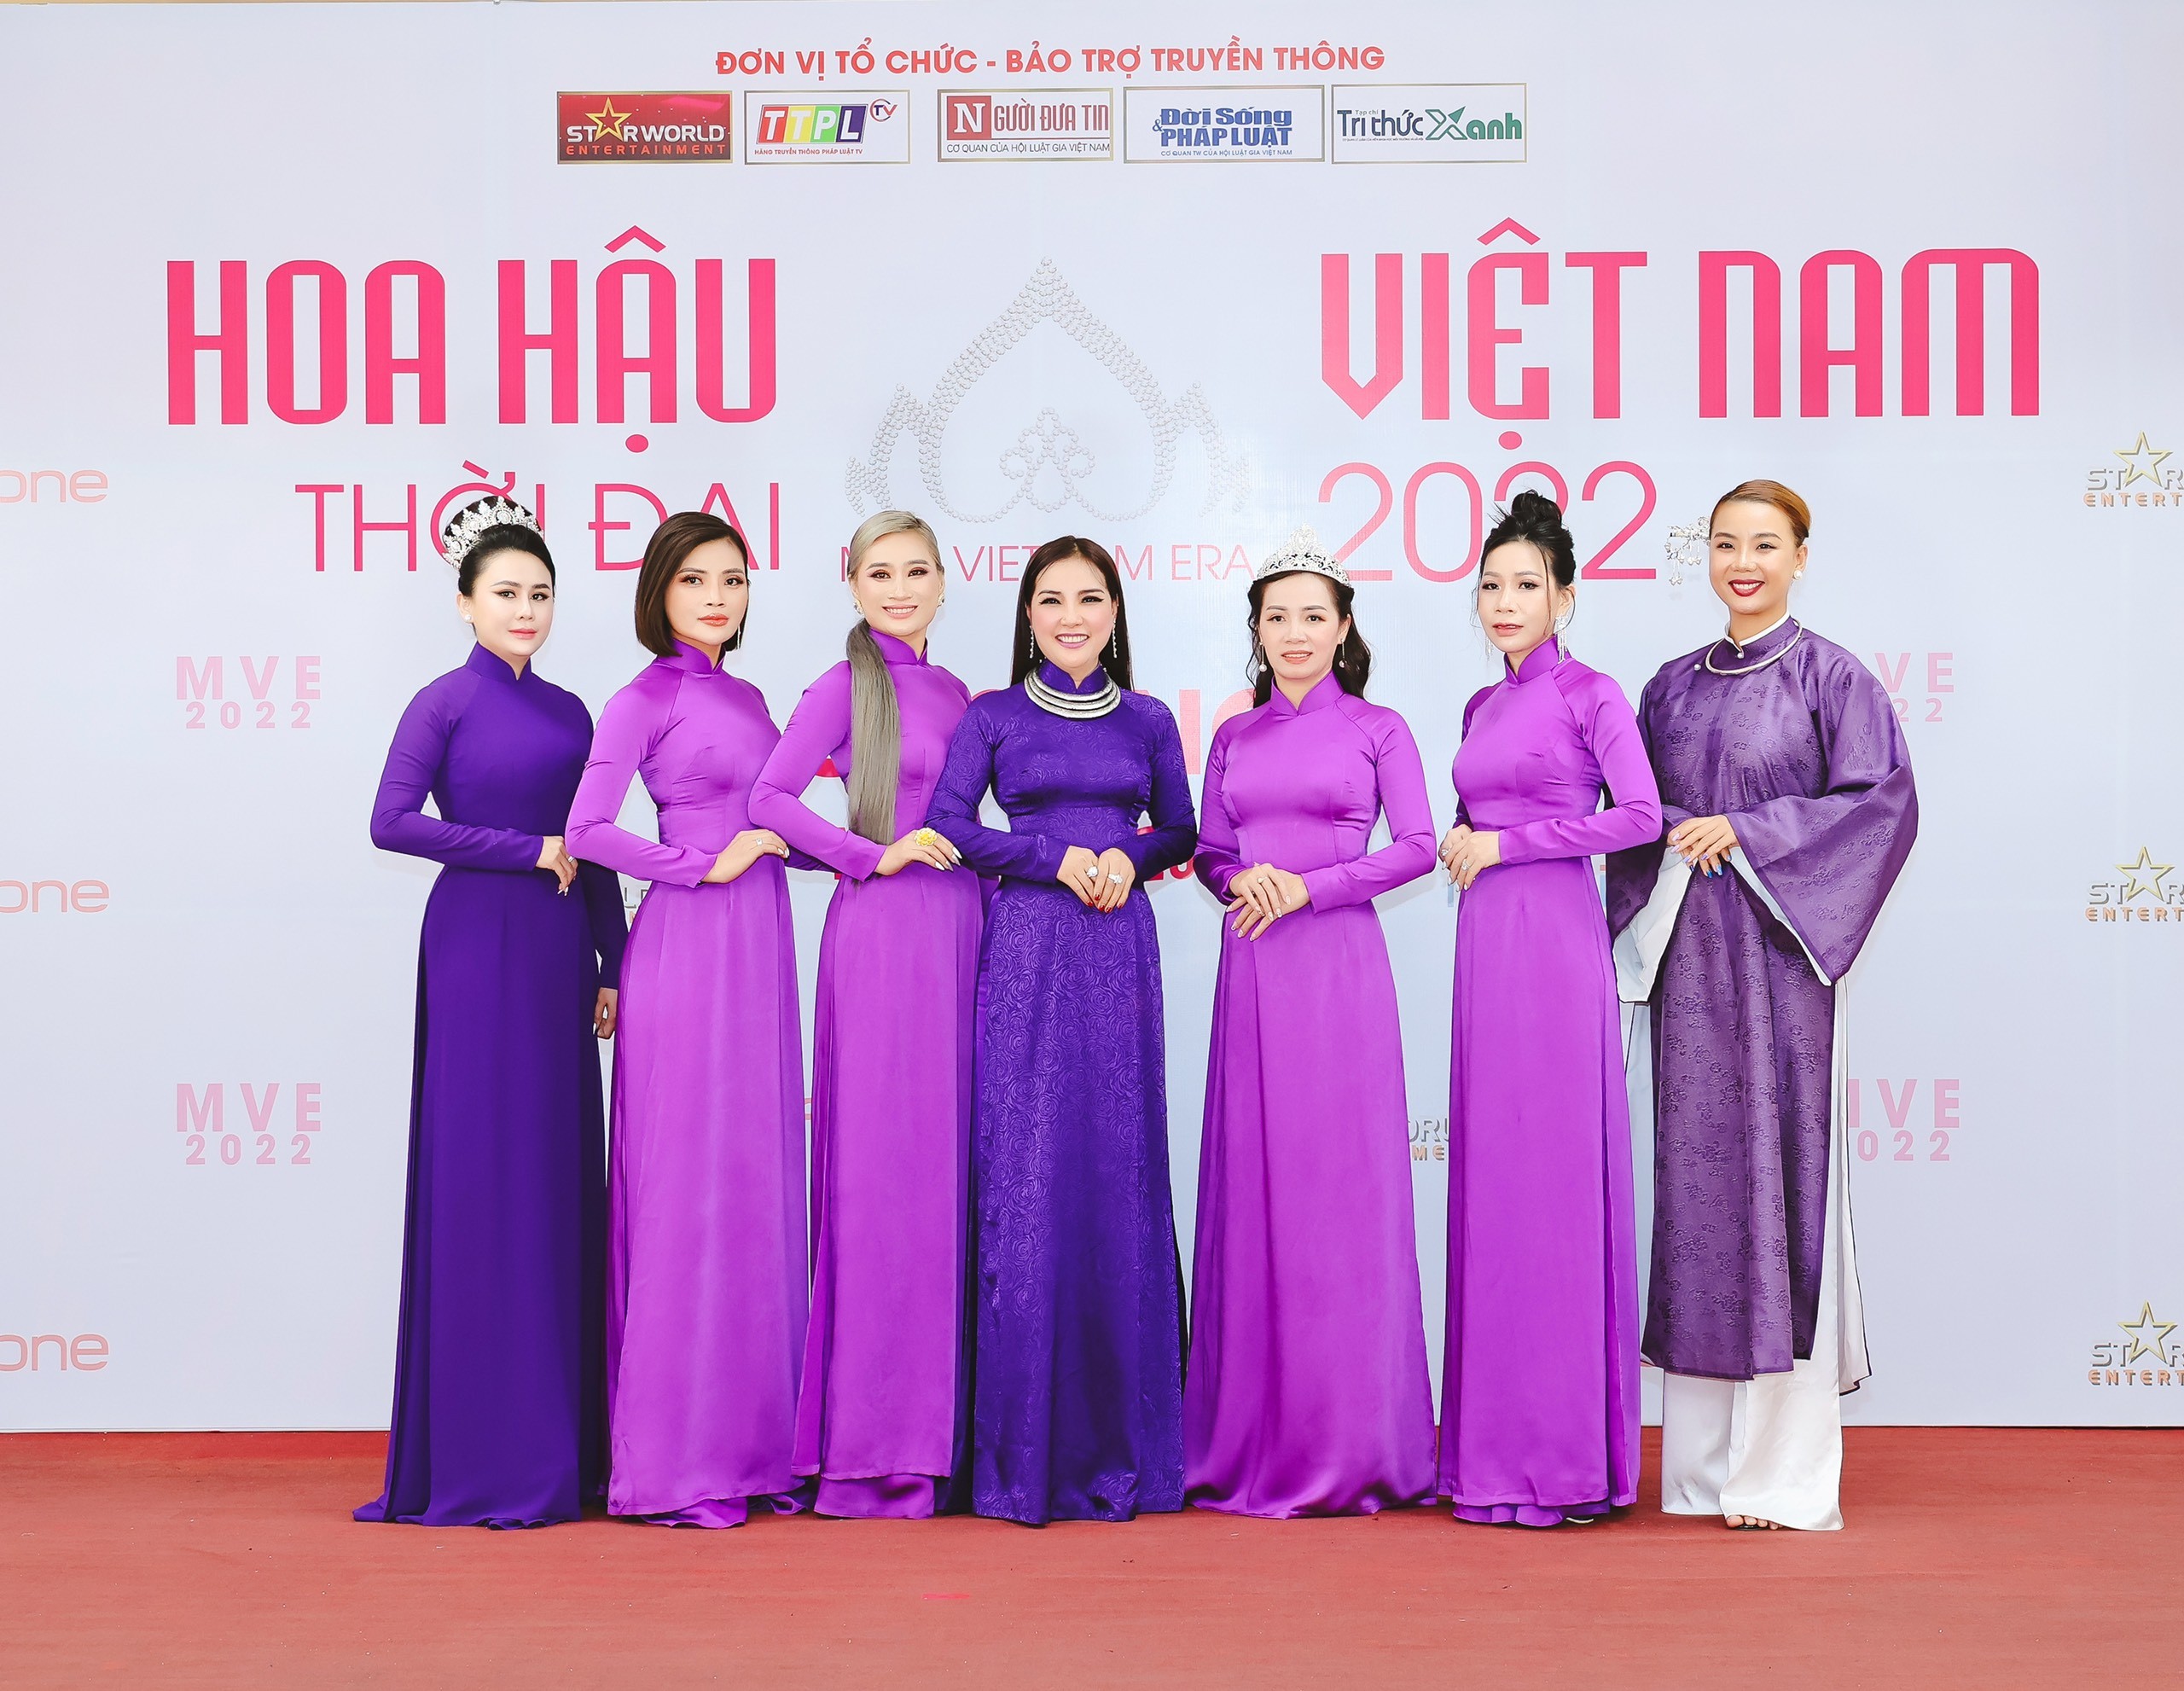 Casting Hoa hậu Việt Nam Thời đại 2022 khu vực Tây Nguyên - nhiều thí sinh tiềm năng xuất hiện